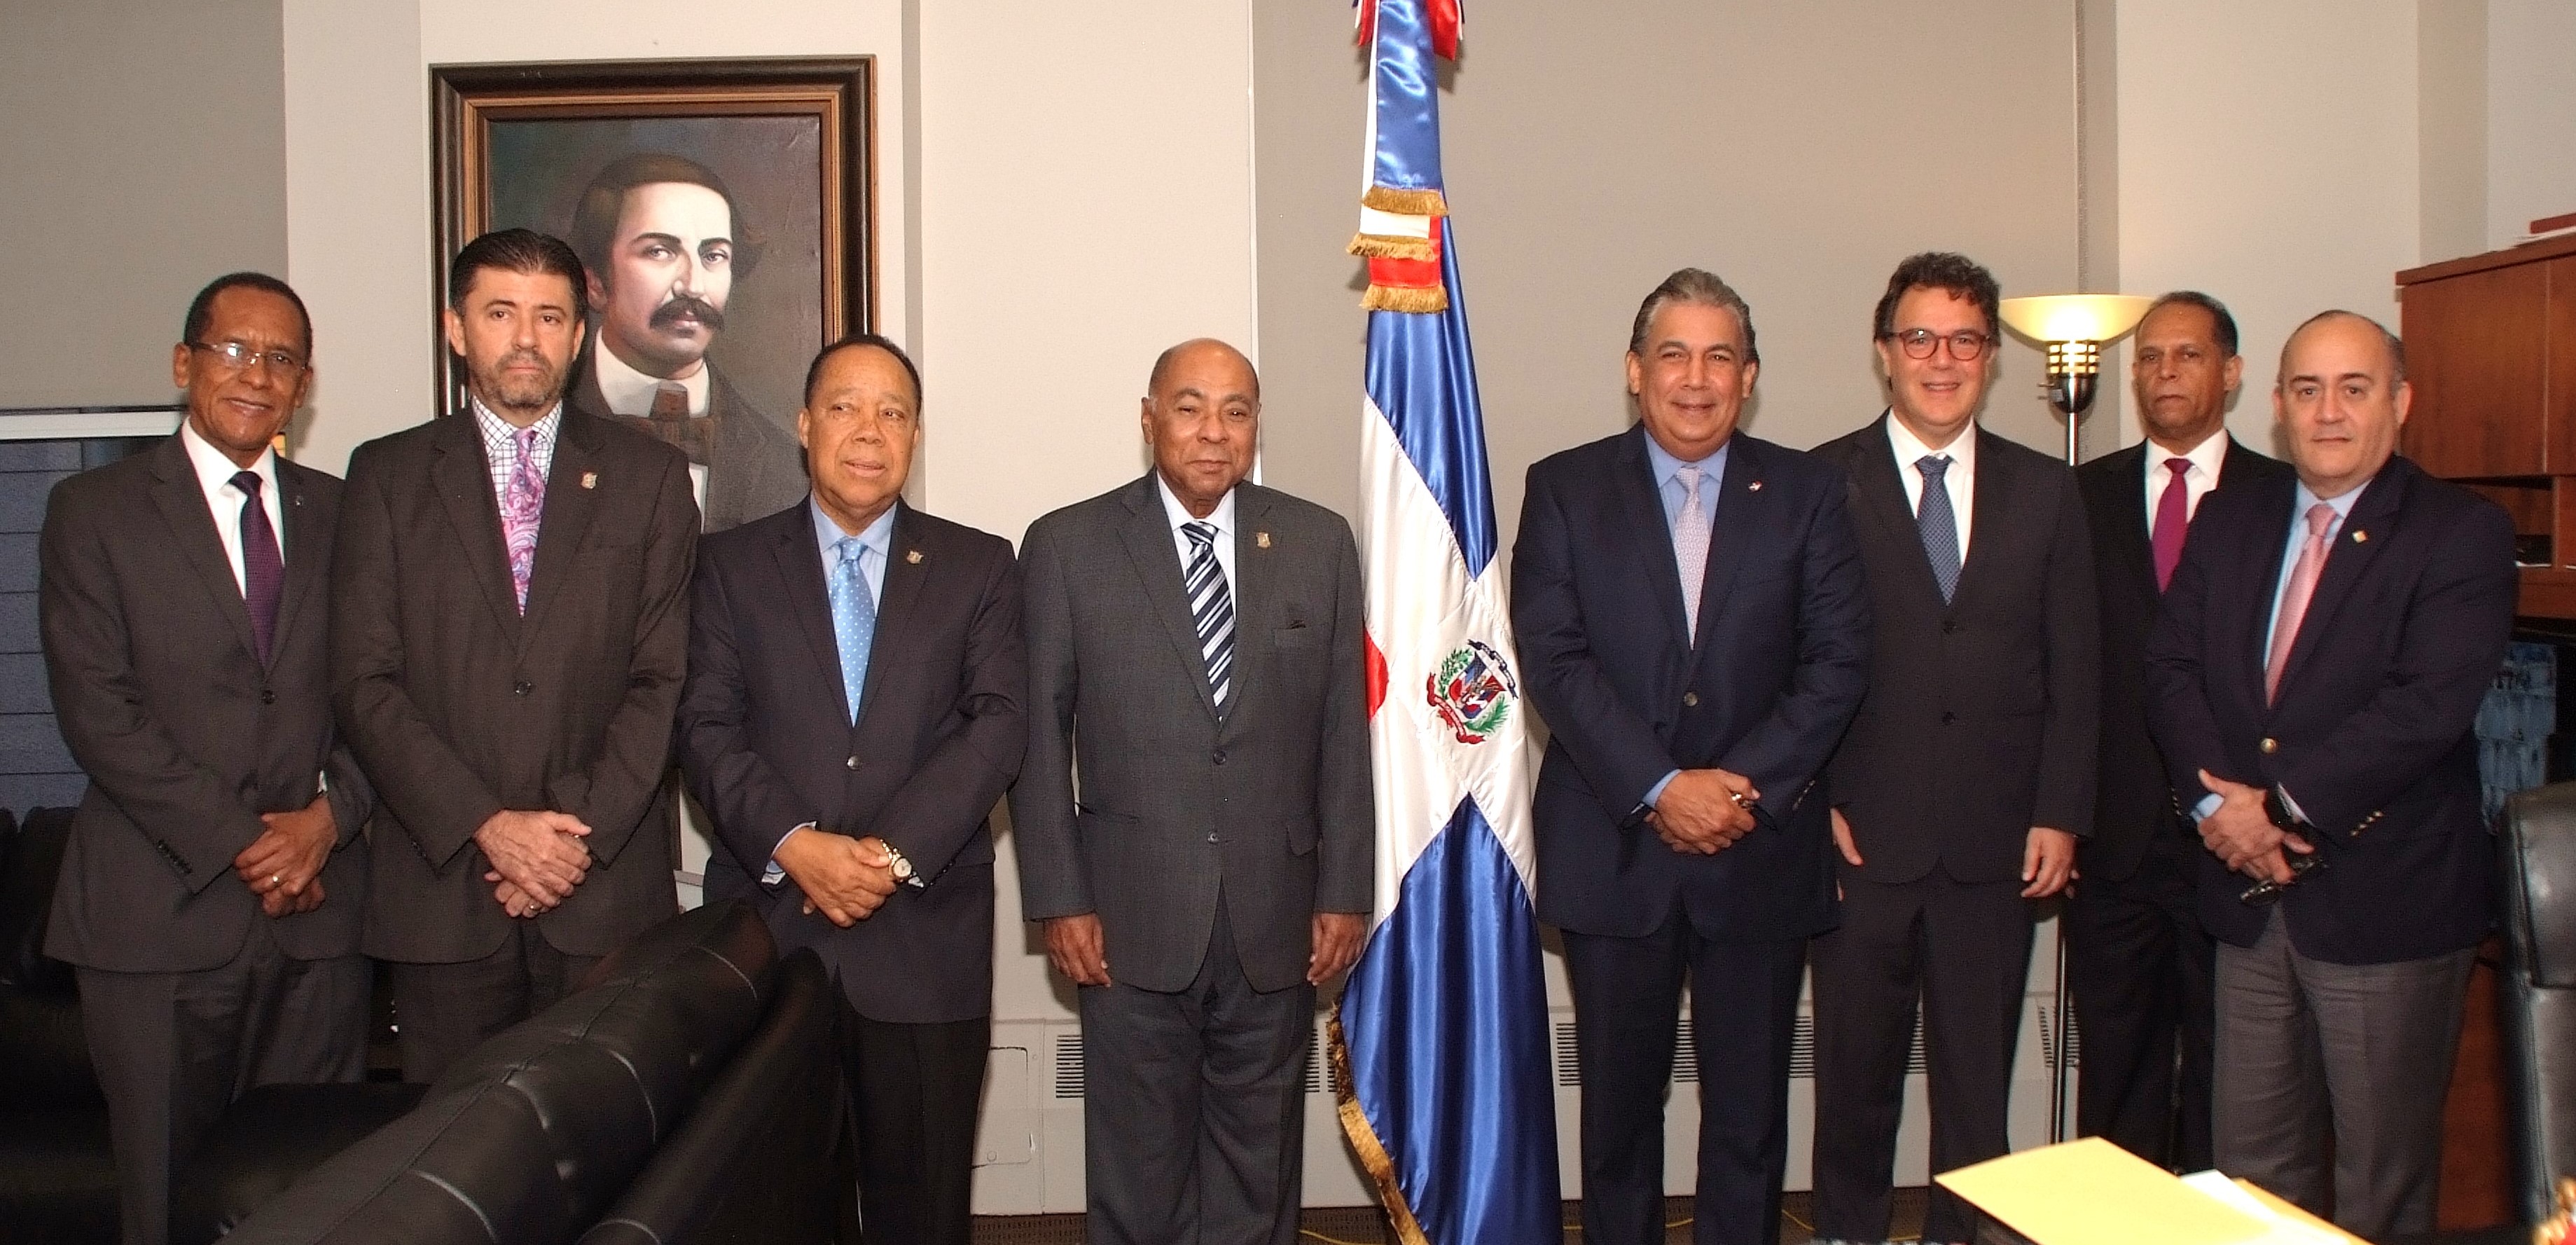  Magistrado Ray Guevara y tres jueces TC son distinguidos por Cónsul Dominicano en NY y los alcaldes de Paterson y Passaic